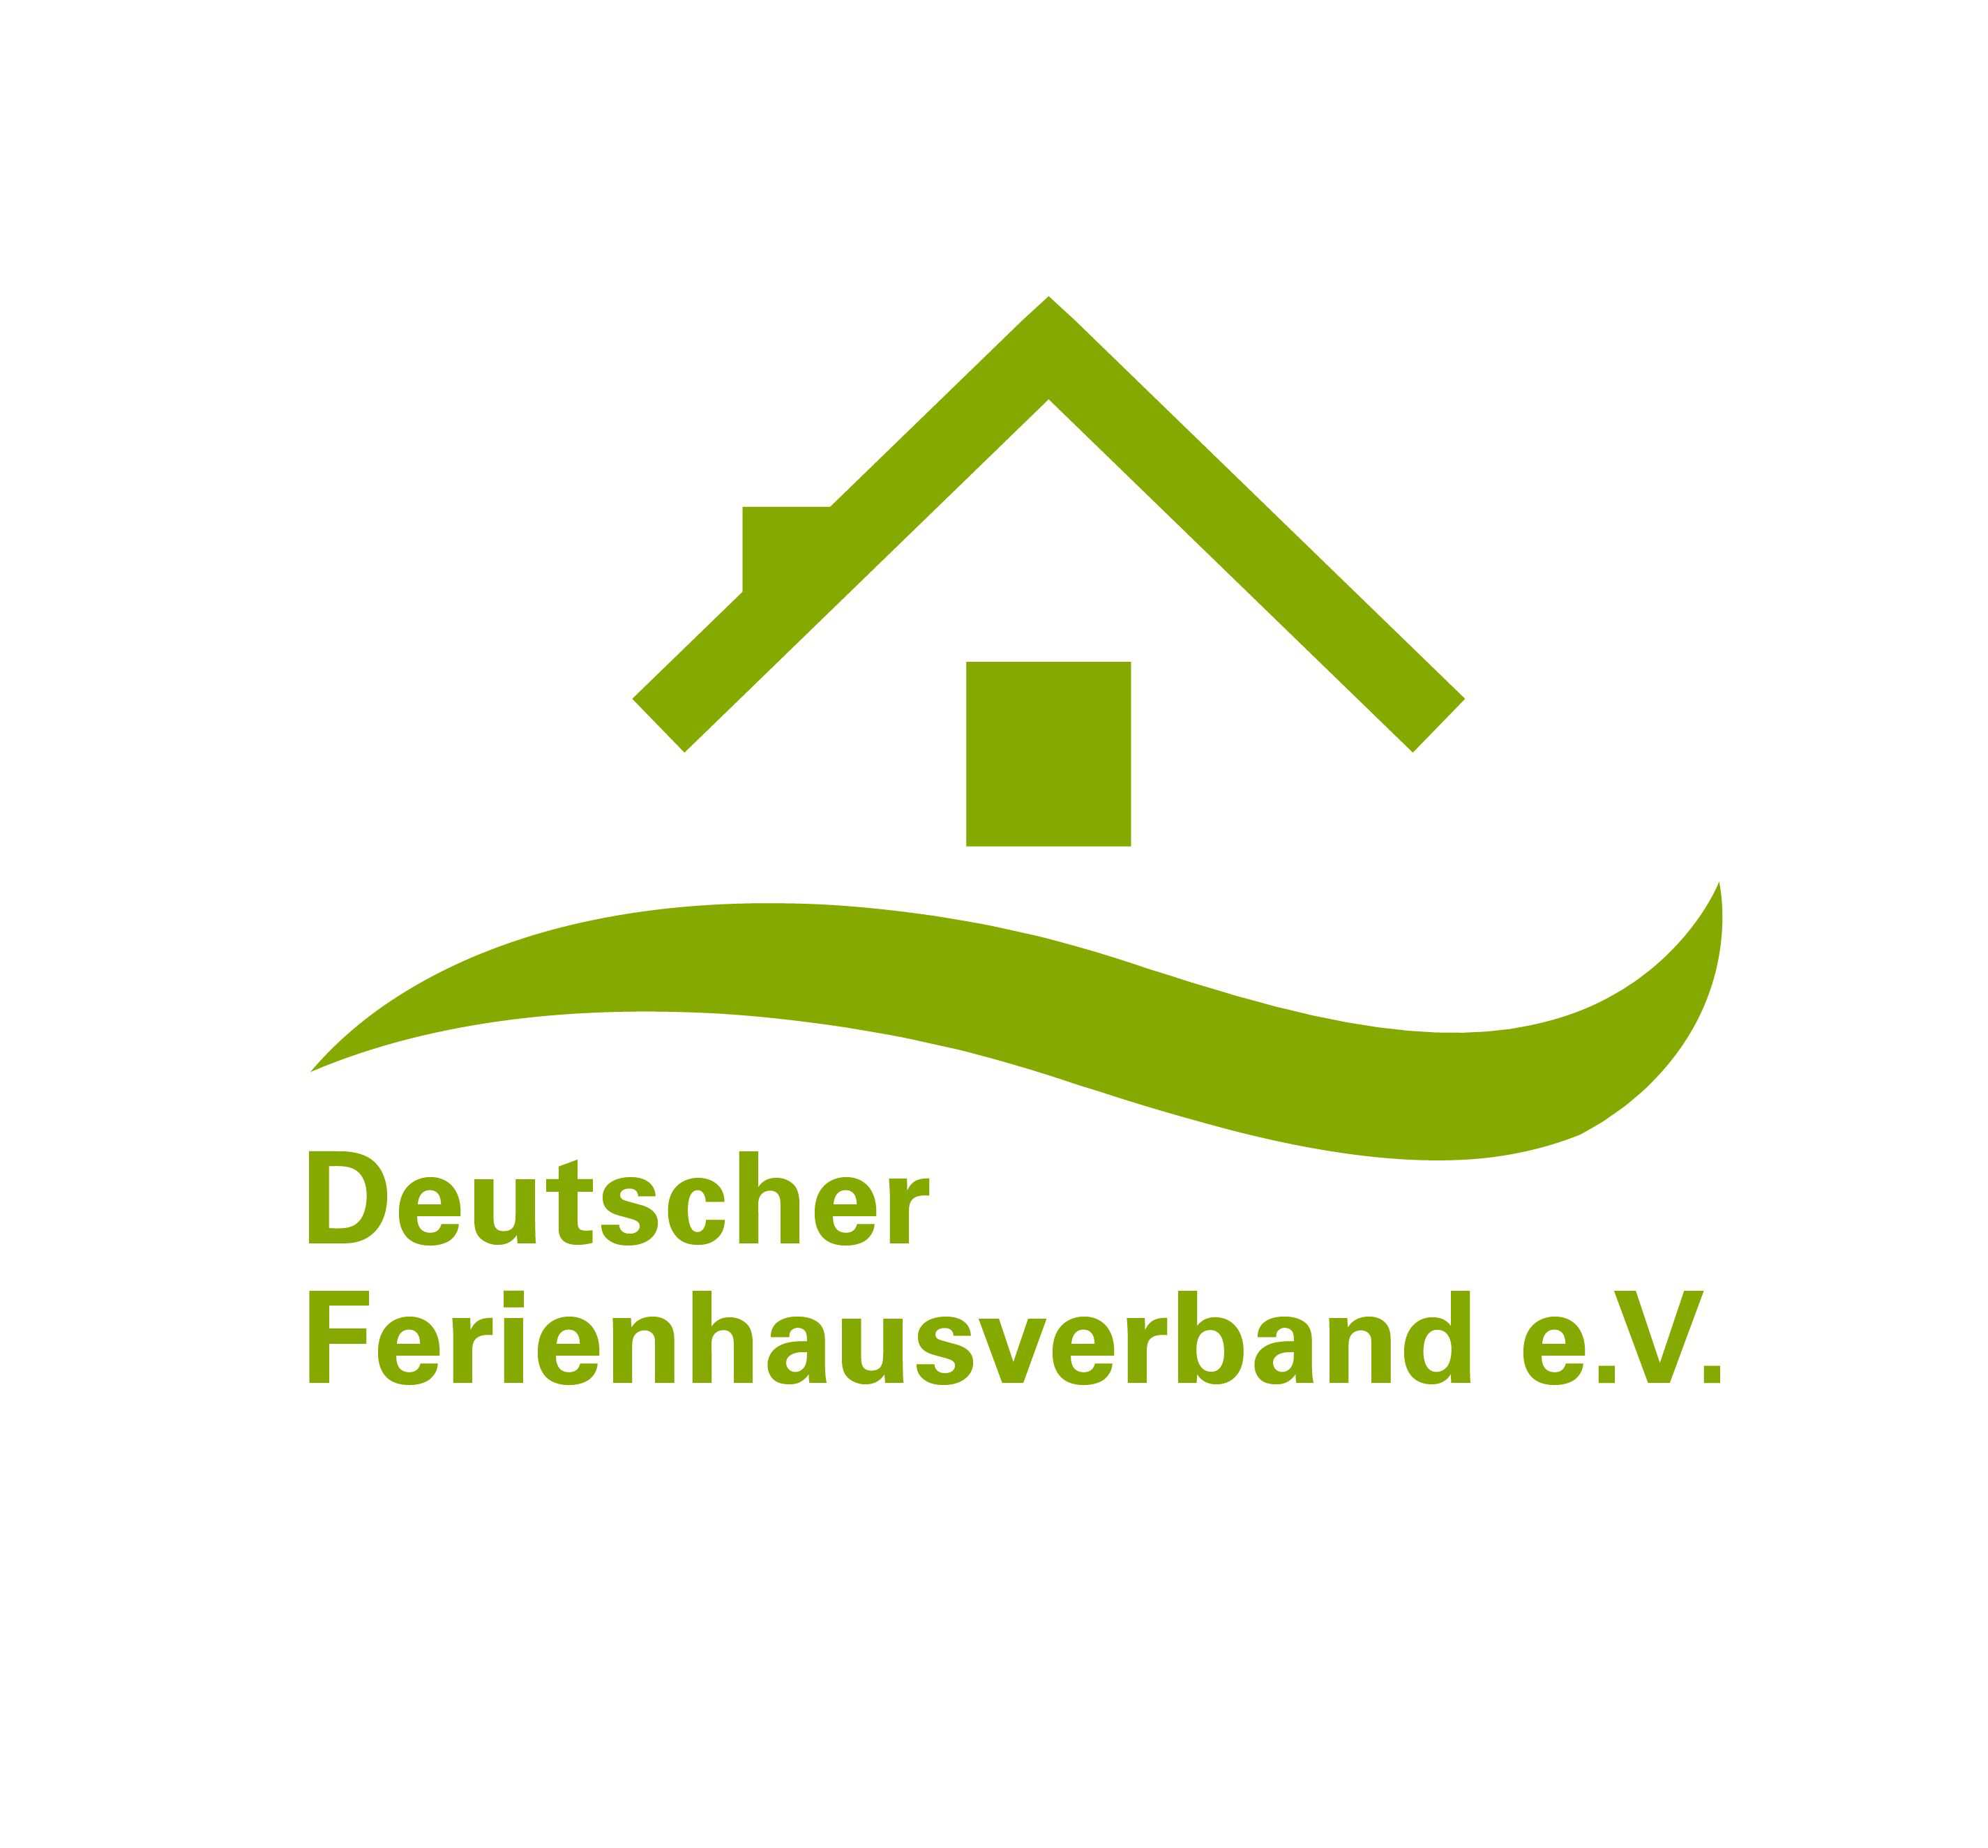 Lösung Der Deutsche Ferienhausverband e.v. setzt sich gemeinsam mit dem Deutschen Tourismusverband e.v. dafür ein, dass die teils über Jahrzehnte gewachsenen Strukturen in Tourismusorten erhalten bleiben.